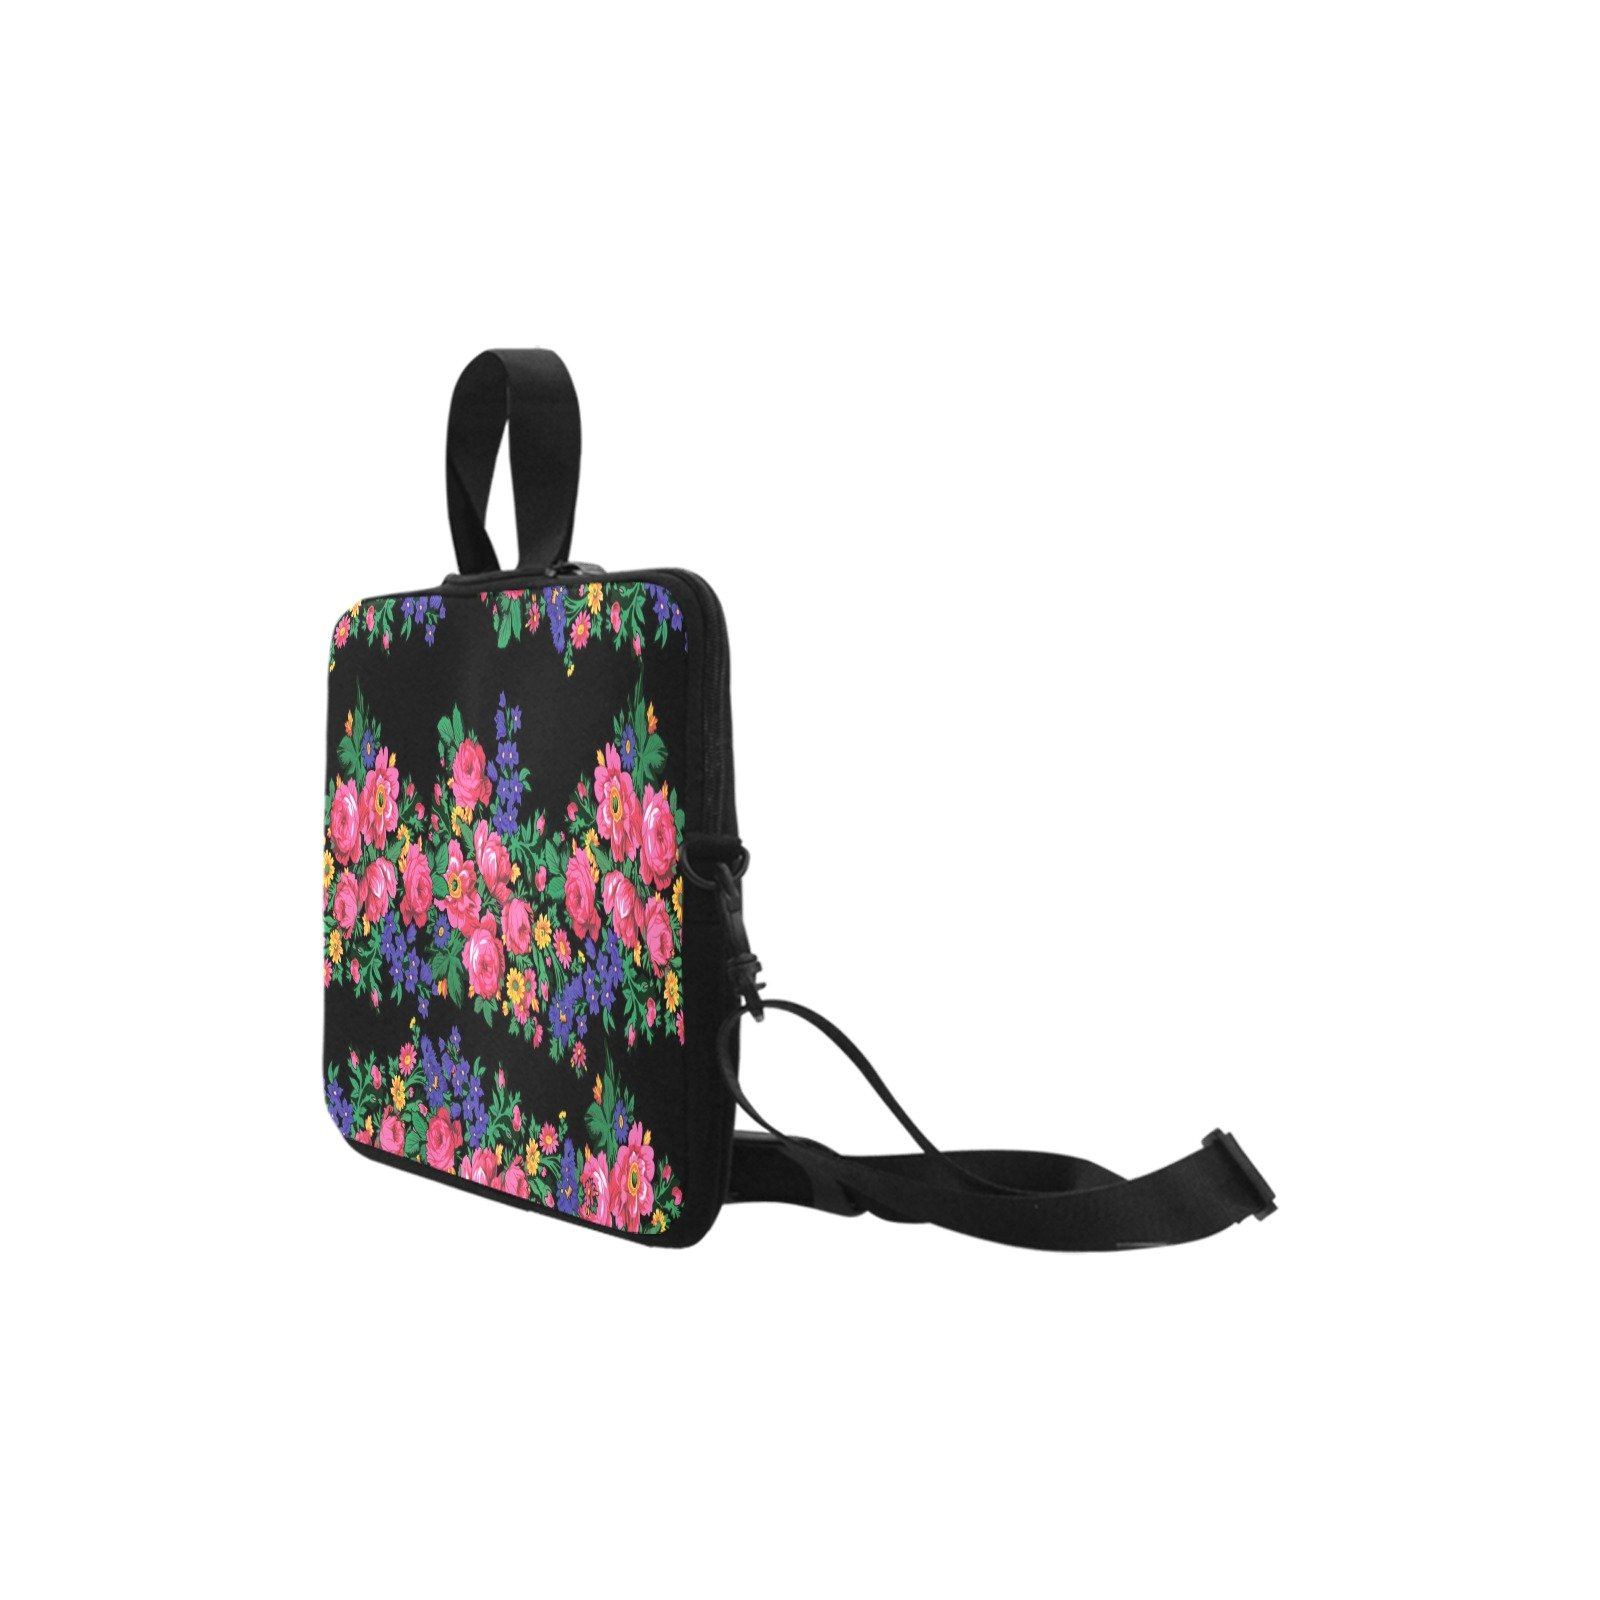 Kokum's Revenge Black Laptop Handbags 11" bag e-joyer 